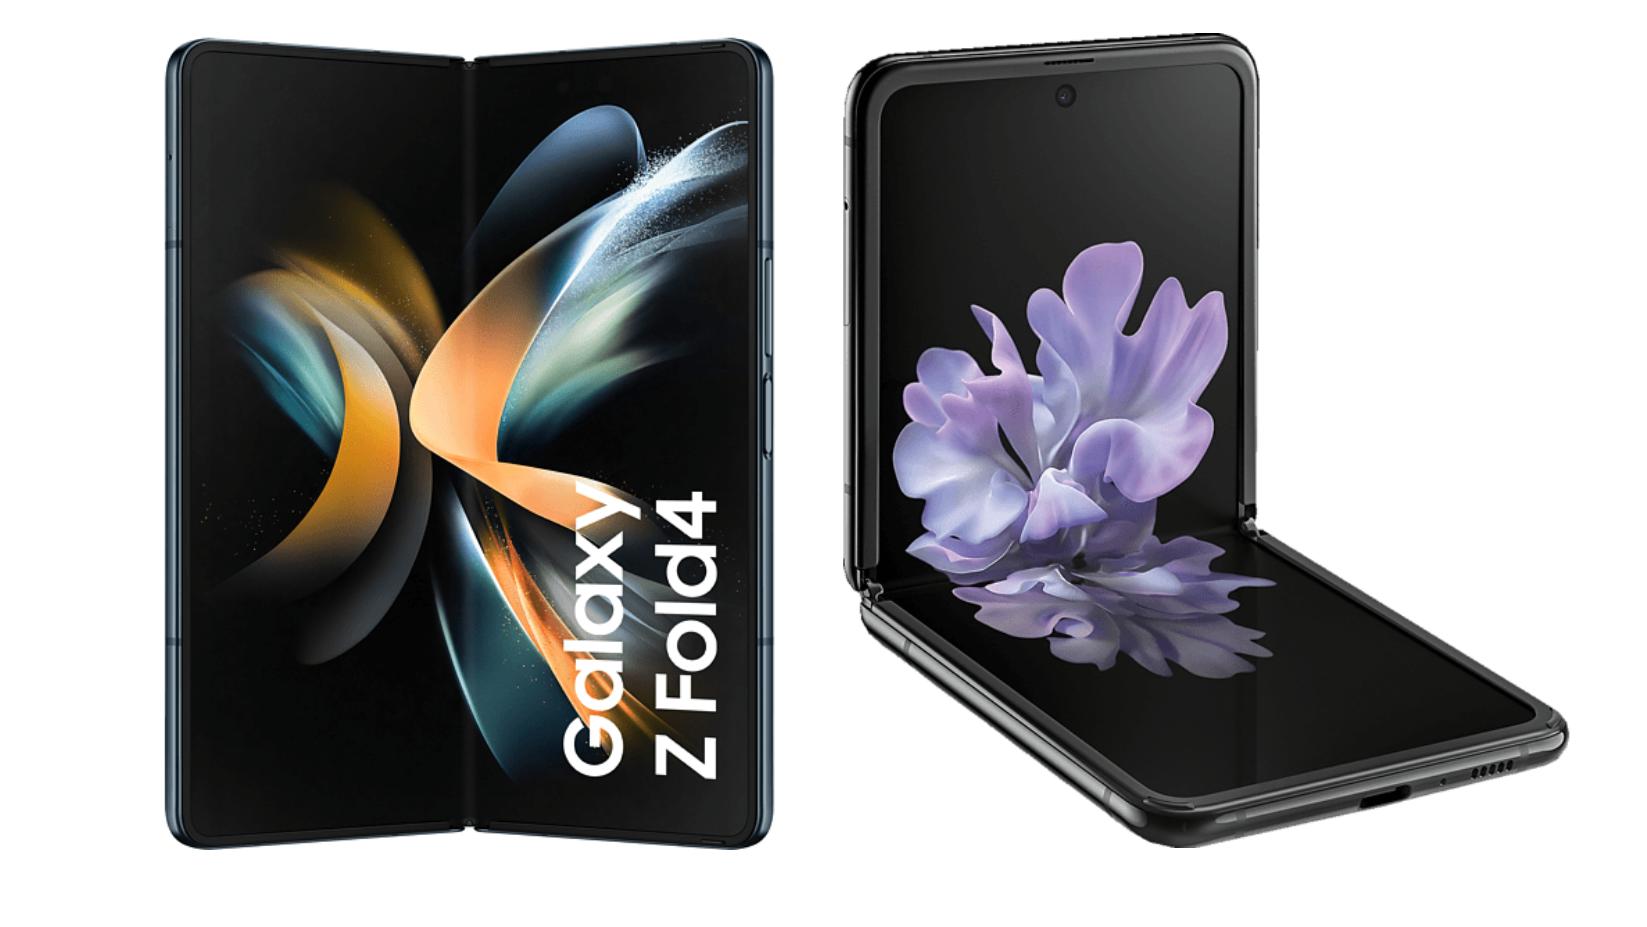 samsung-hat-auf-einem-galaxy-unpacked-event-die-neuen-smartphones-z-flip-4-und-z-fold-4-vorgestellt